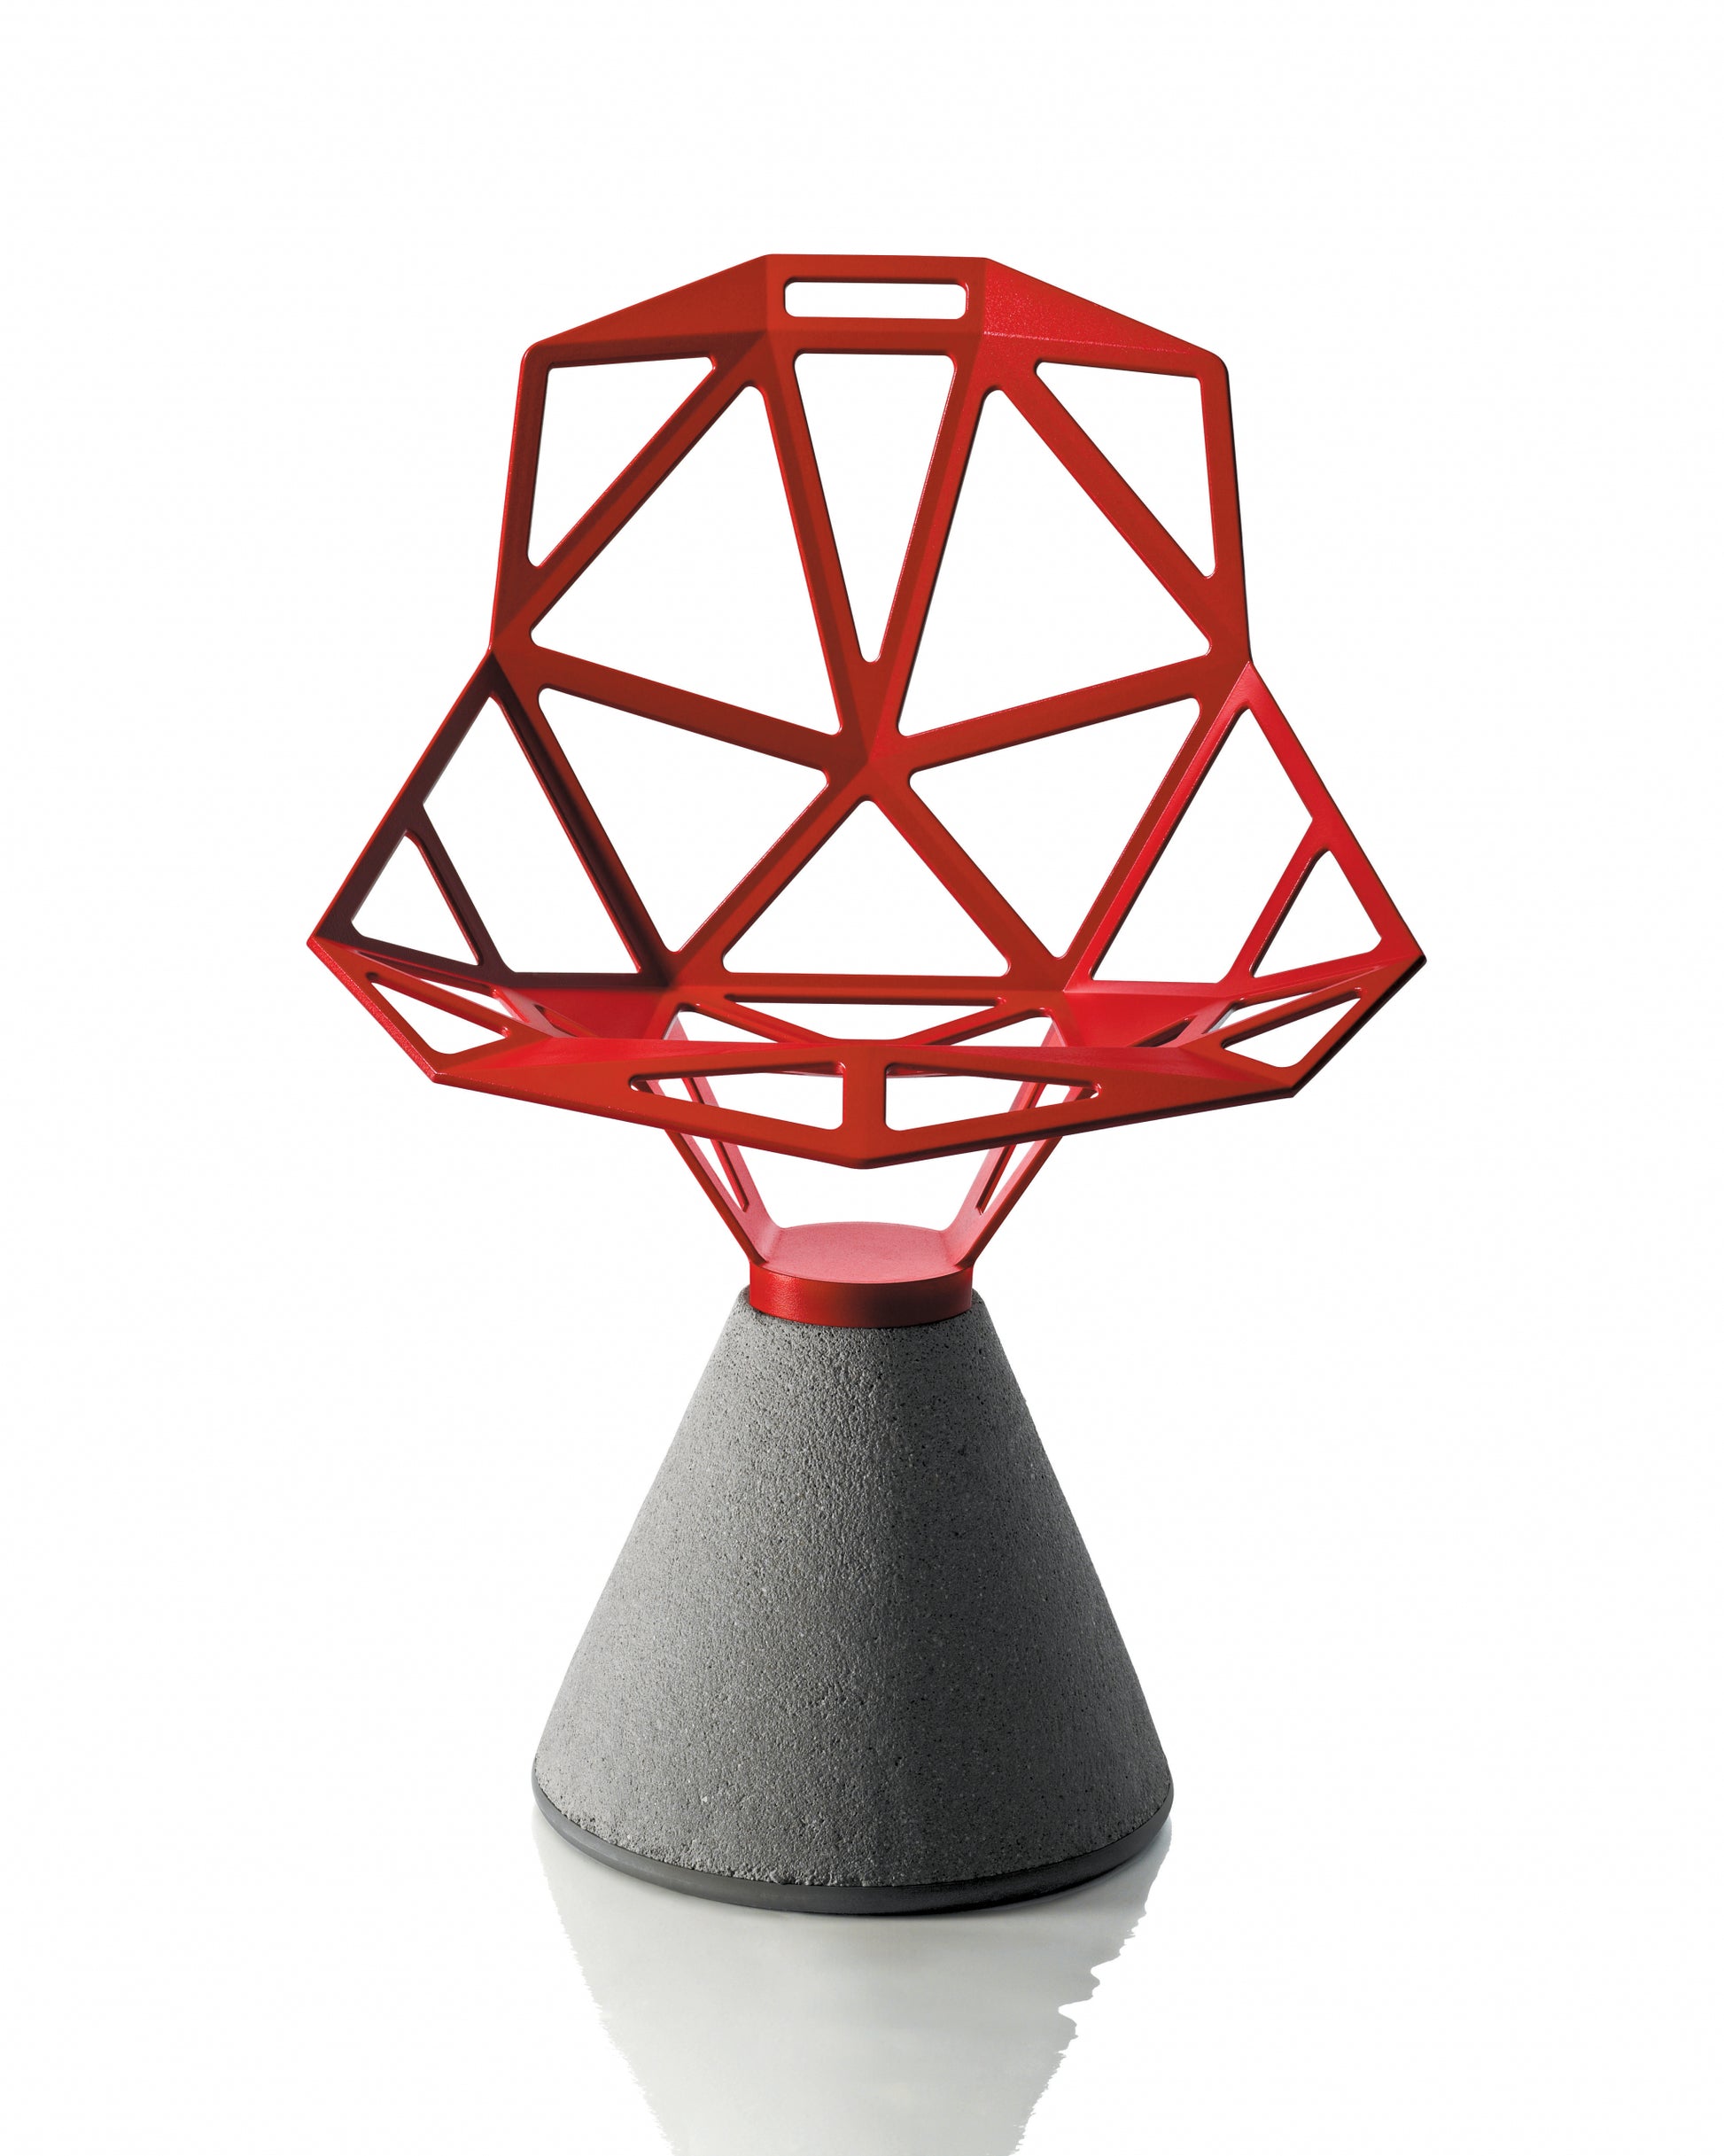 Silla Chair One roja con base de cemento negra sin cojín